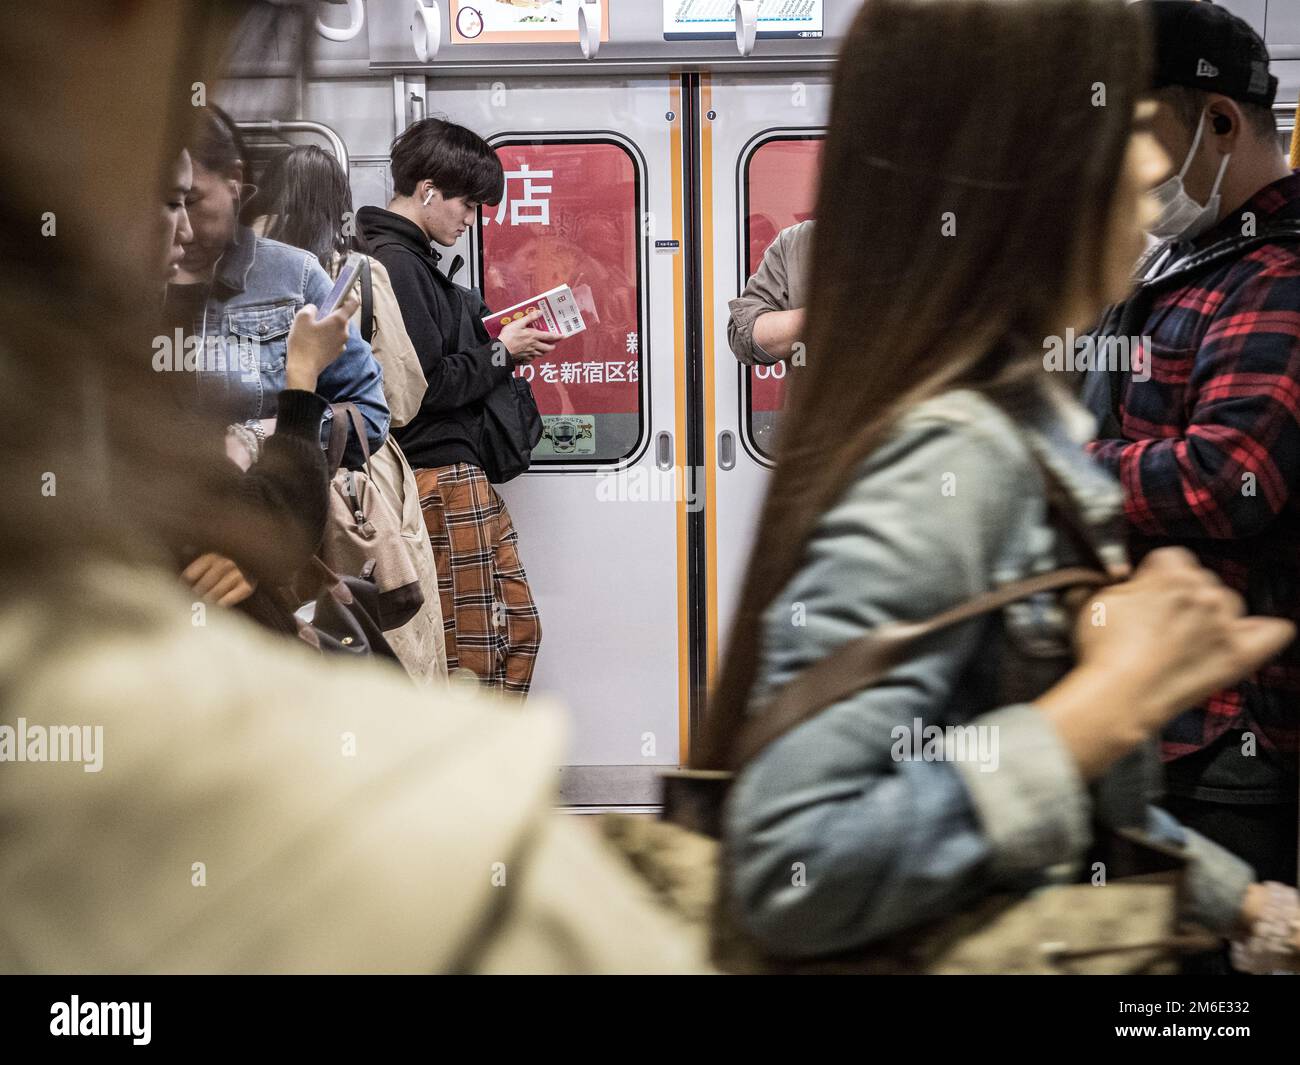 Tokio, Japan - 10 11 19: Menschen, die auf einen geschäftigen Tokioter Zug warten Stockfoto